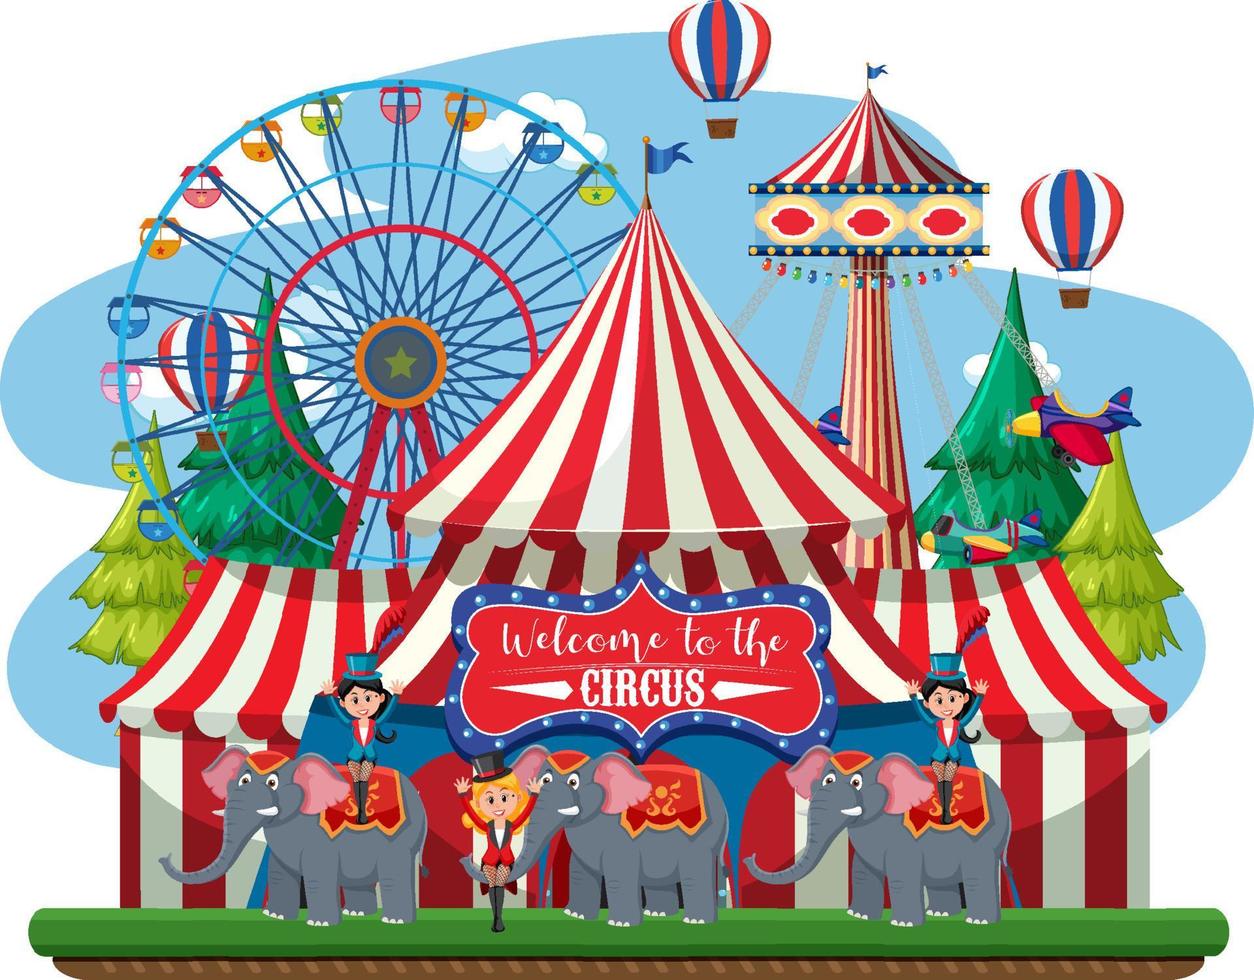 circus dome em parque de diversões vetor